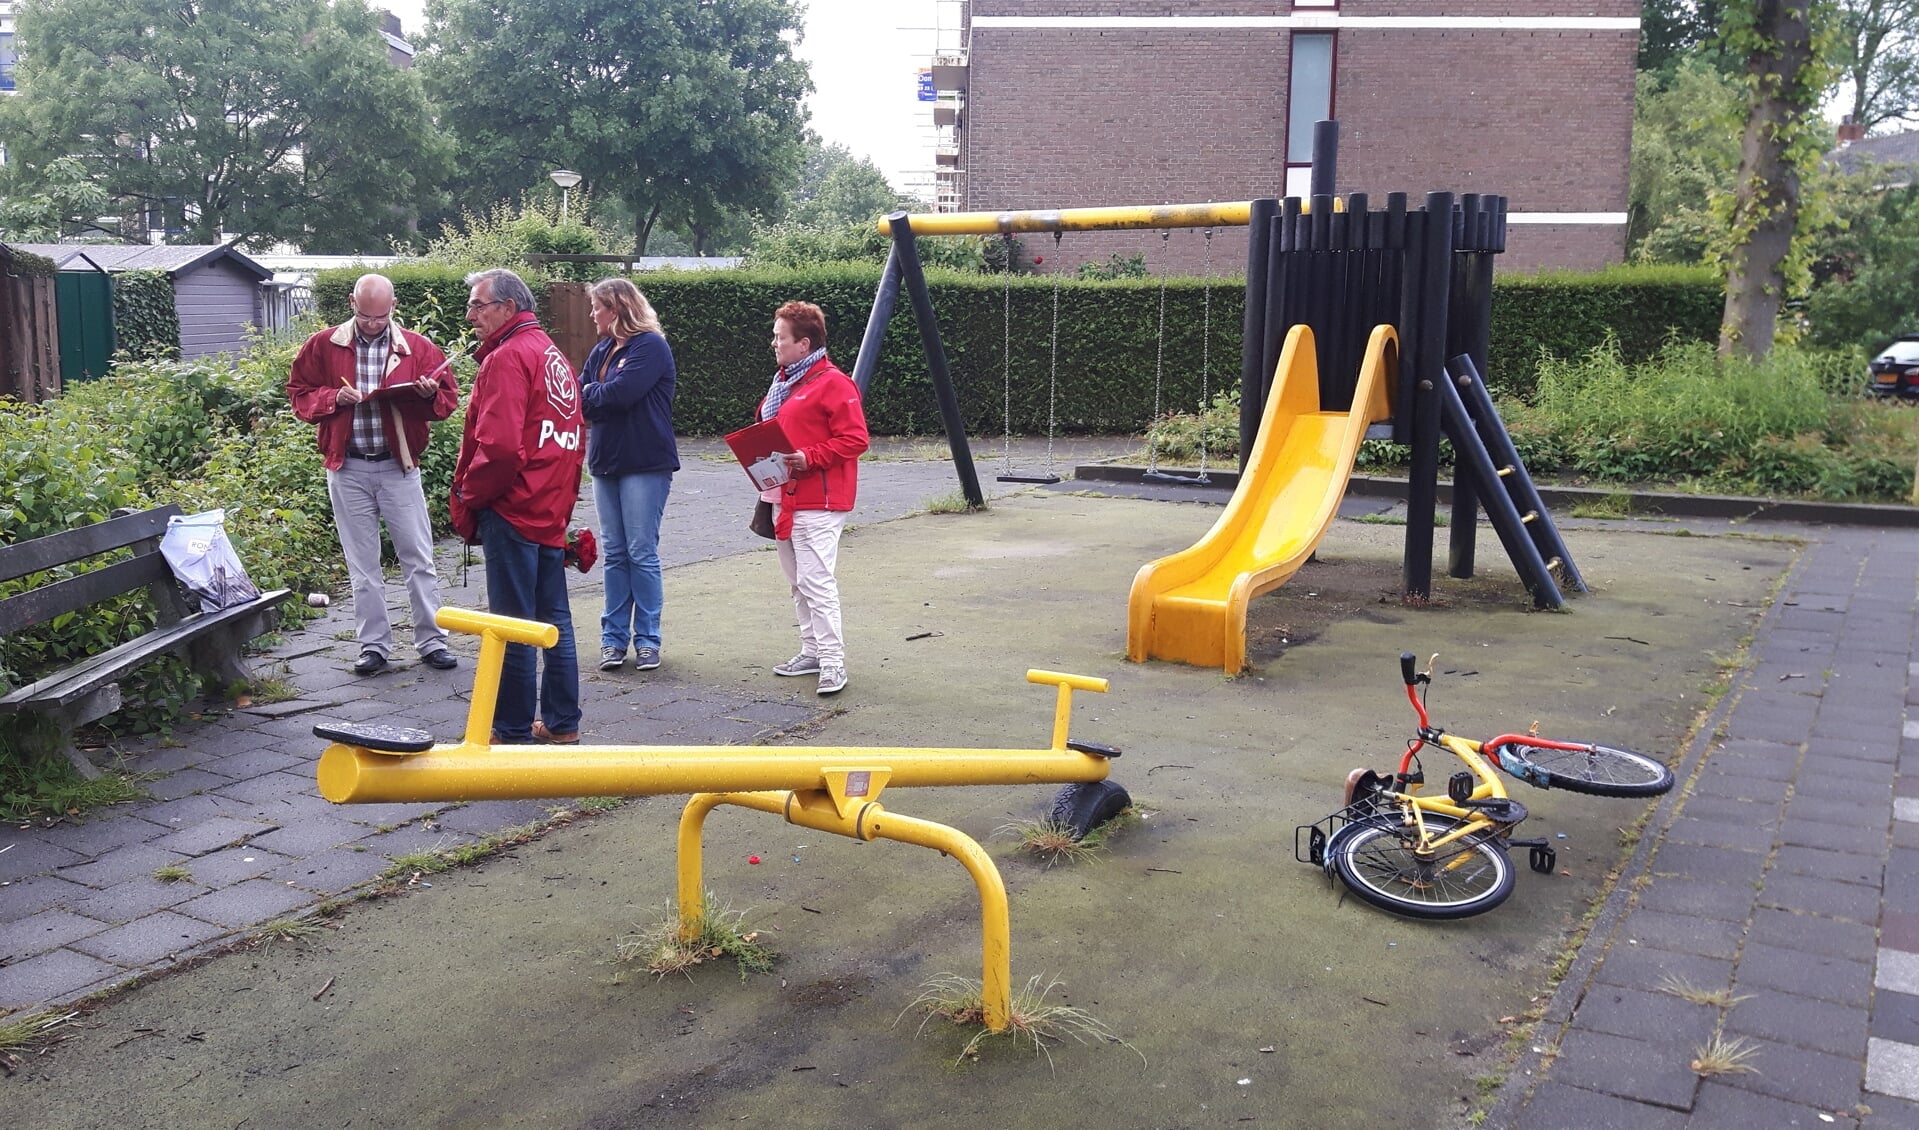 De PvdA raadsleden kwamen de situatie in de speeltuin bekijken.